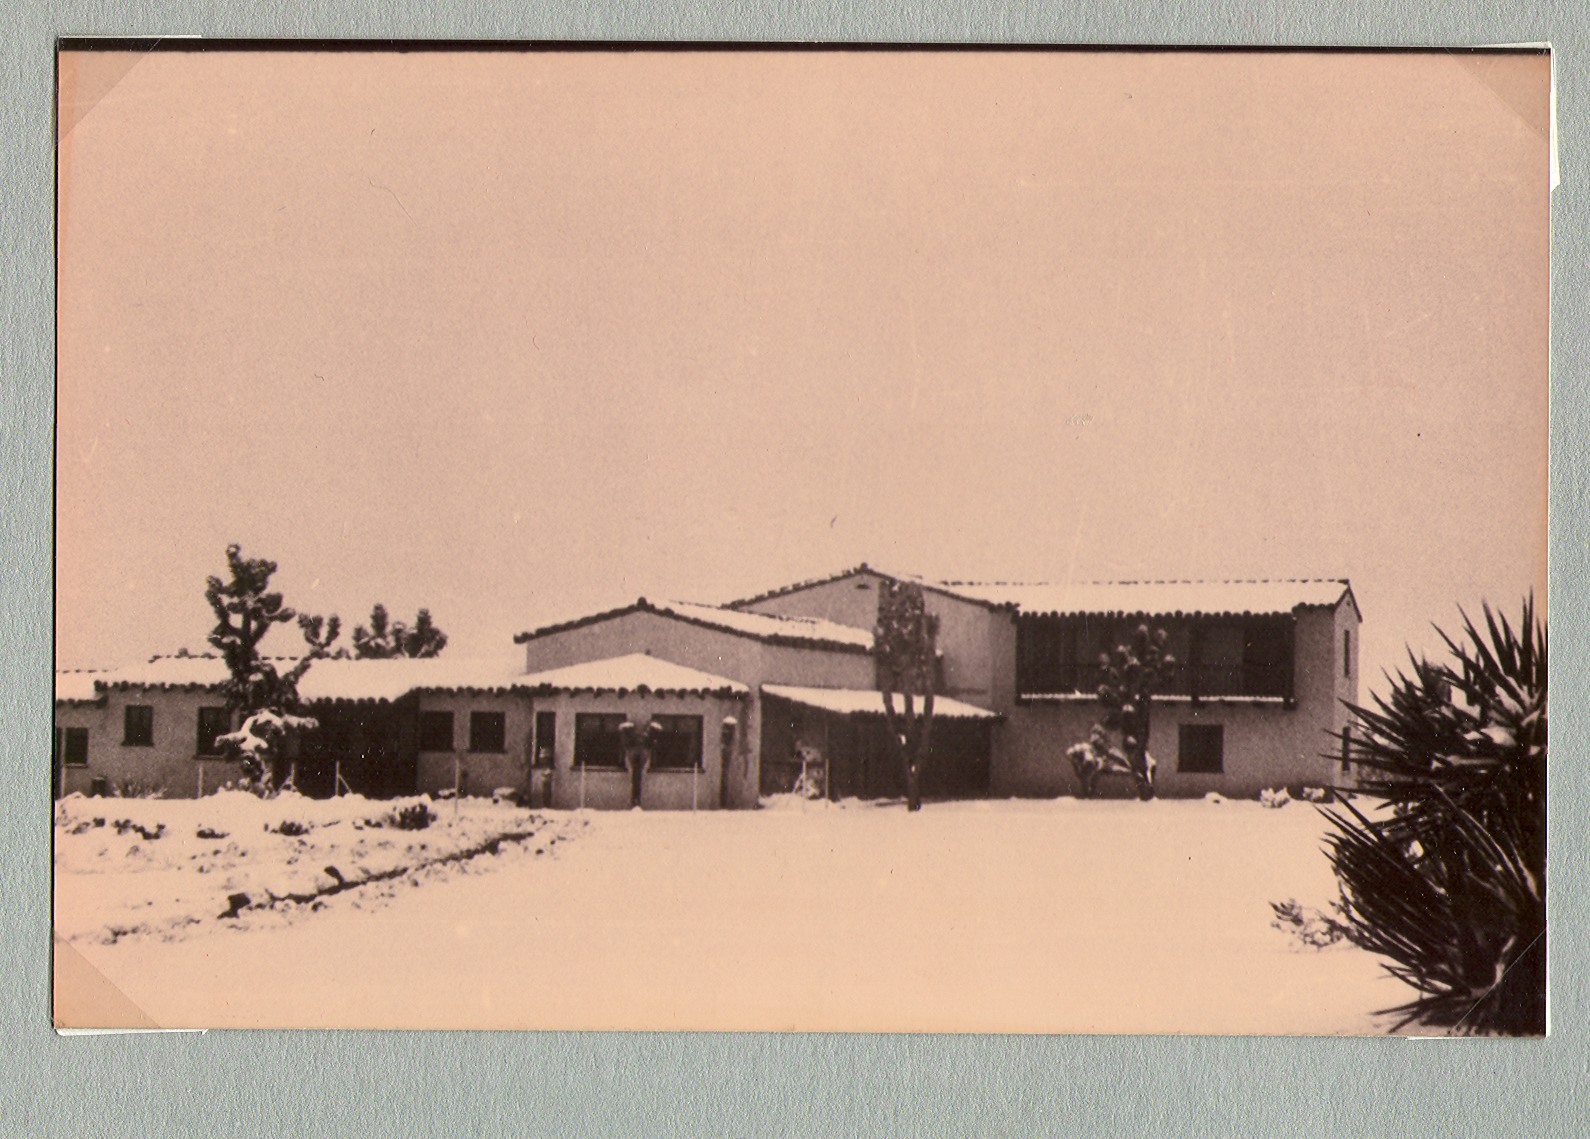 Ranch house at Walking Box Ranch, Nevada: photographic print